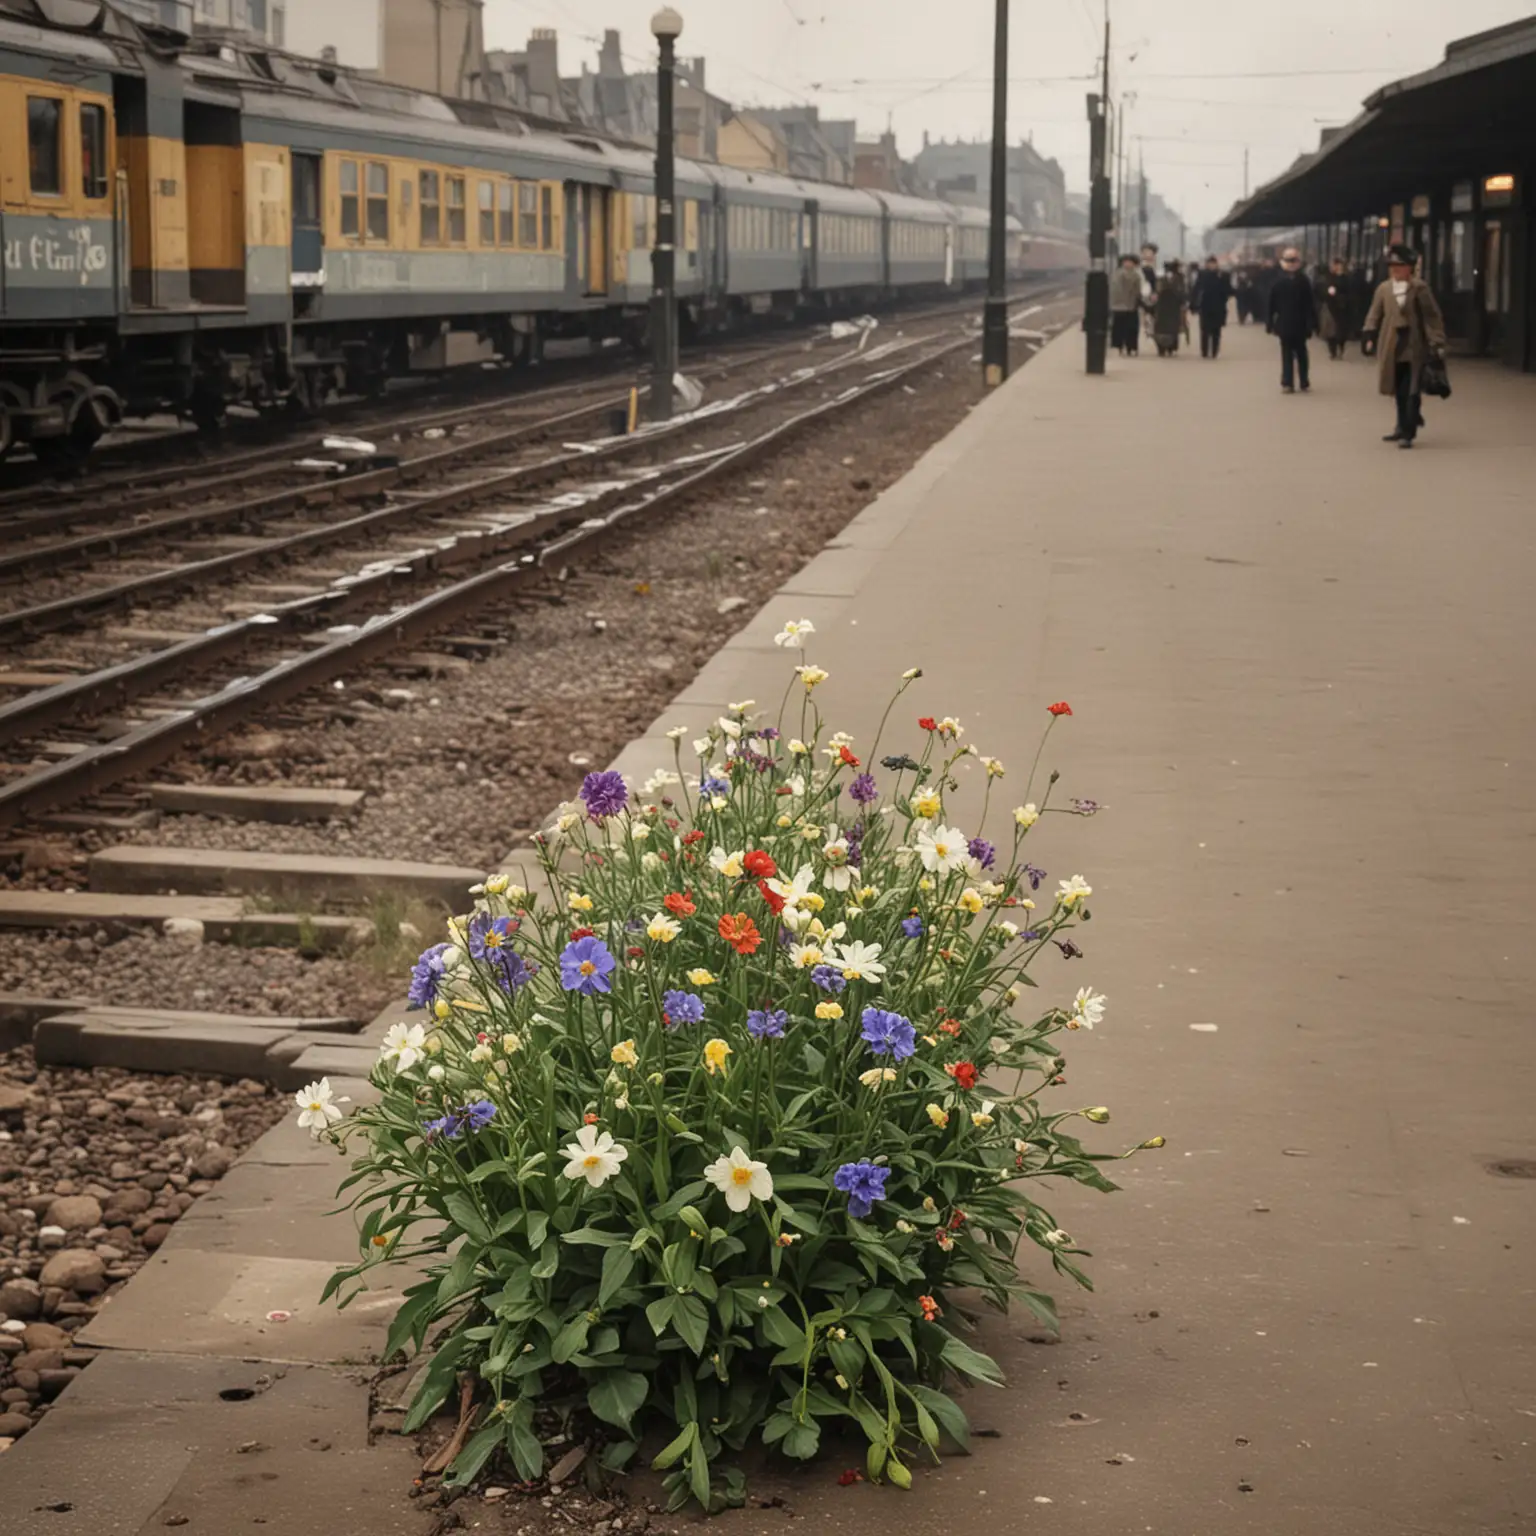 Flower Market Scene in a Train Station 1903